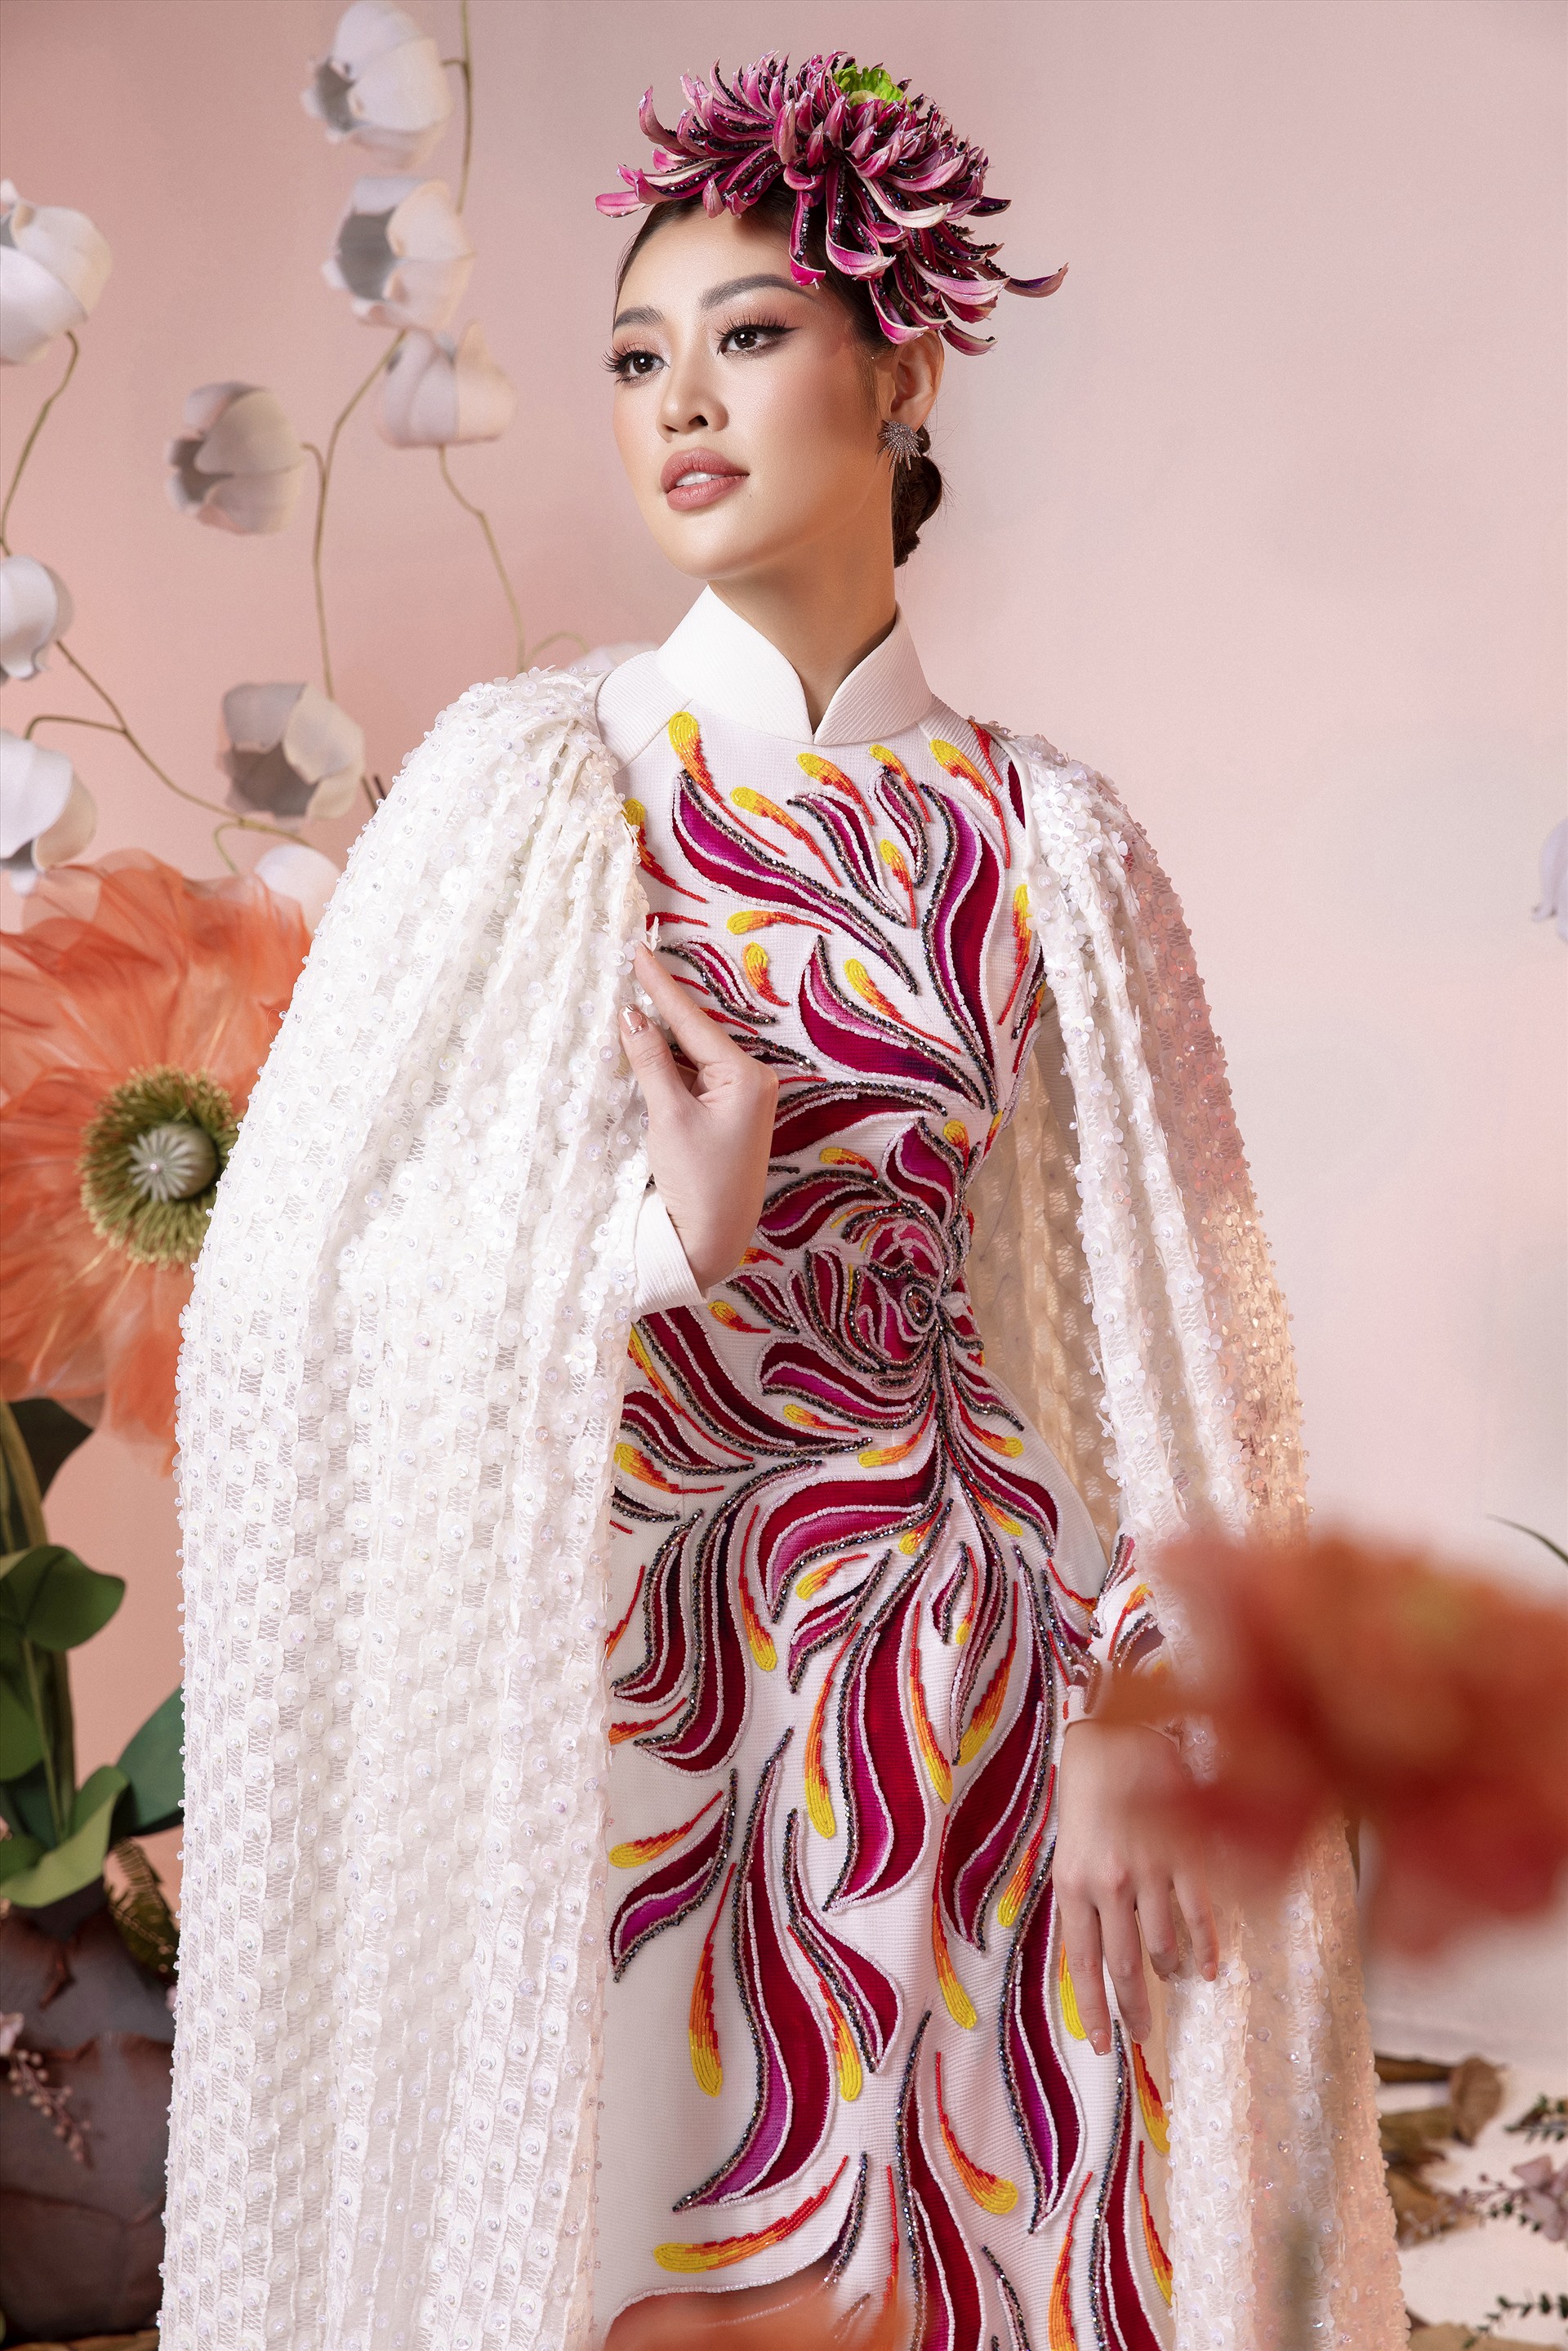 Trong các thiết kế áo dài được Minh Châu sáng tạo, anh đặc biệt tâm huyết với bộ trang phục mở màn có biểu tượng của 2 con chim lớn với hoa văn đẹp mắt. 